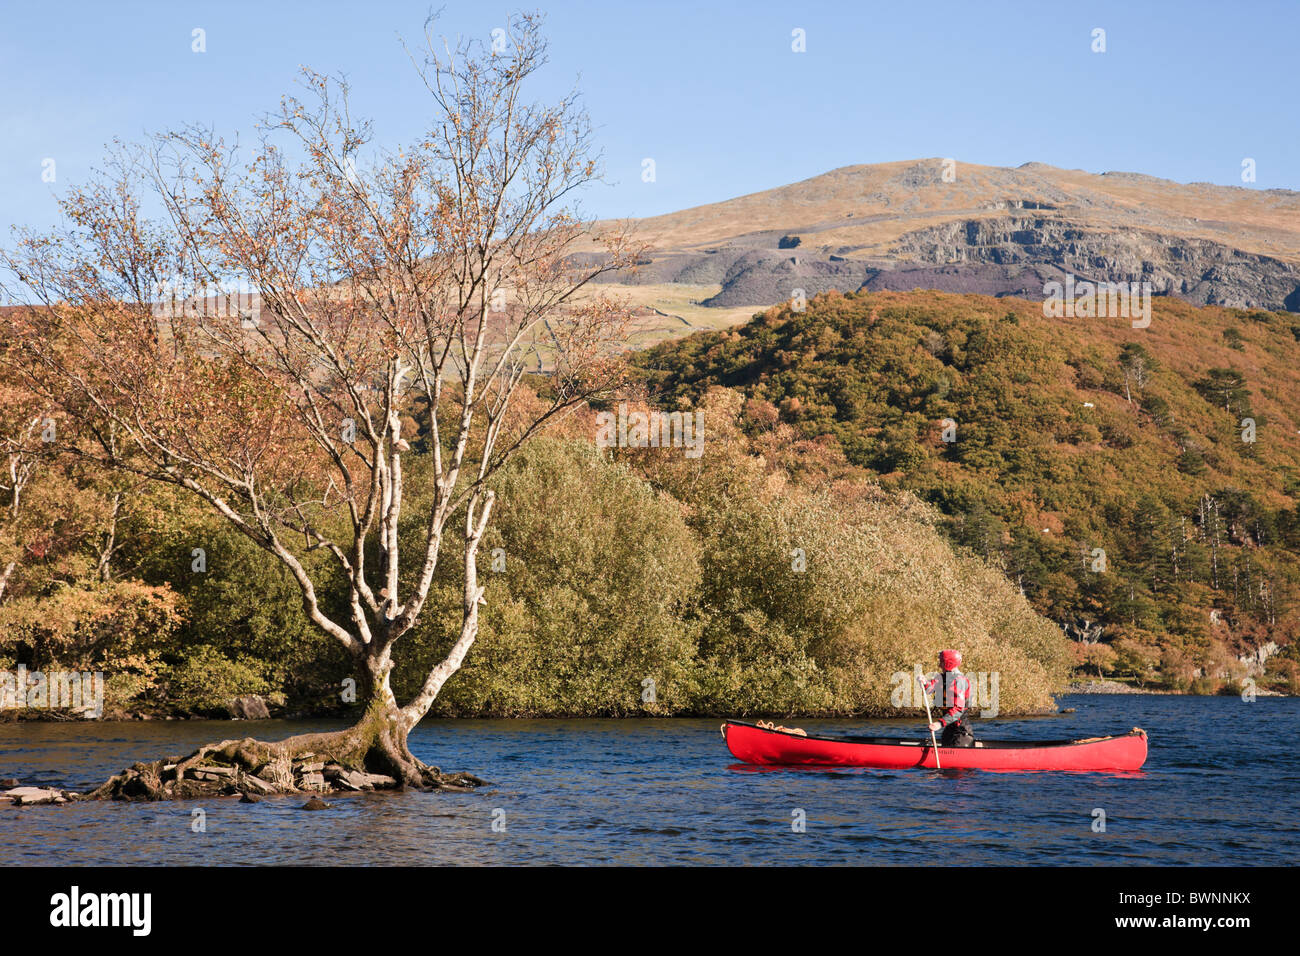 Llanberis, au nord du Pays de Galles, Royaume-Uni. Homme canoë dans un canot rouge sur Llyn Padarn Lake dans le parc national de Snowdonia en automne Banque D'Images